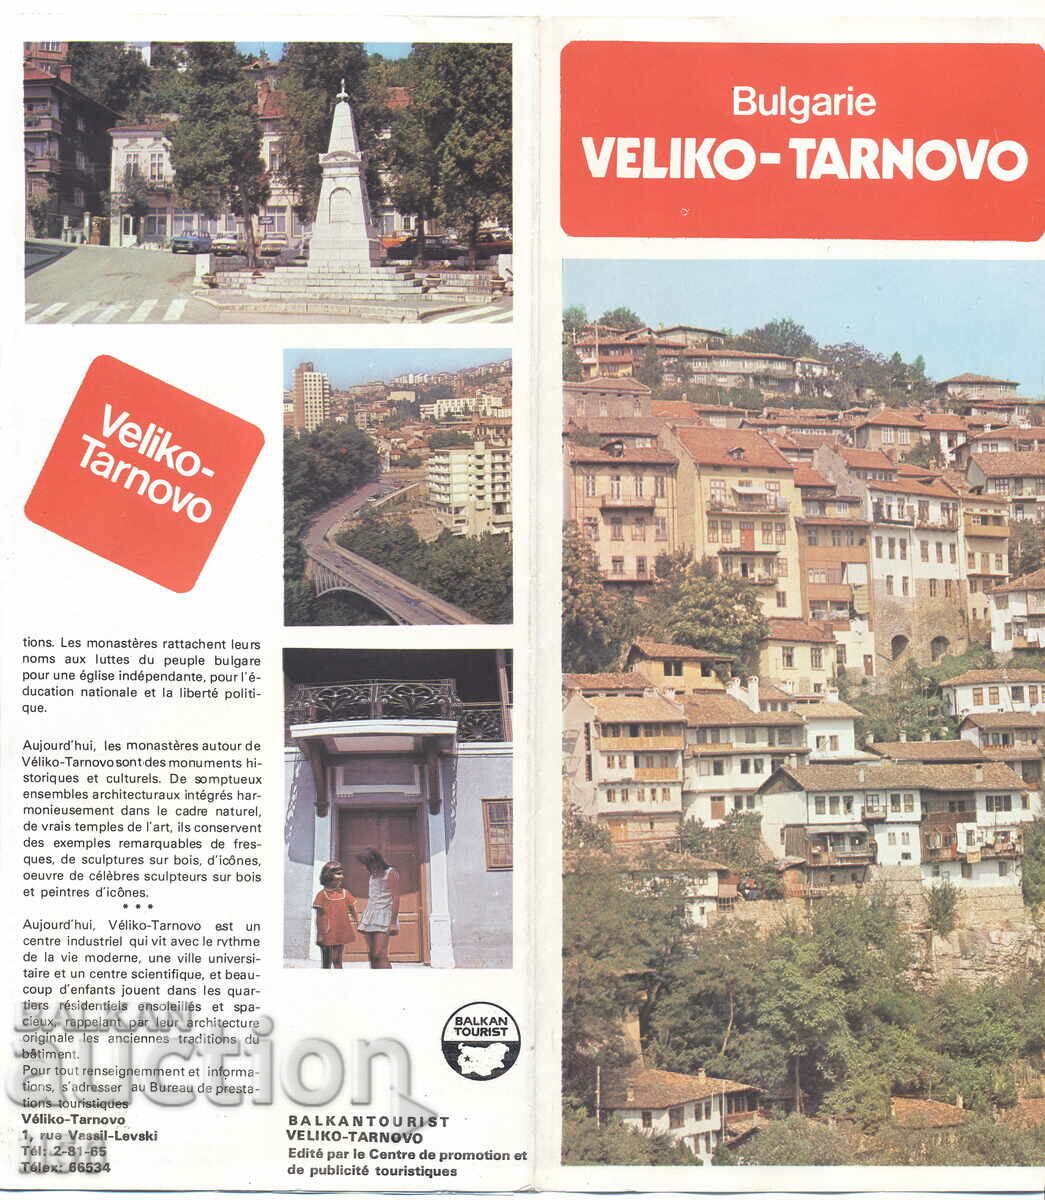 Diplyana - Veliko Tarnovo - Balkantourist approx. 1980